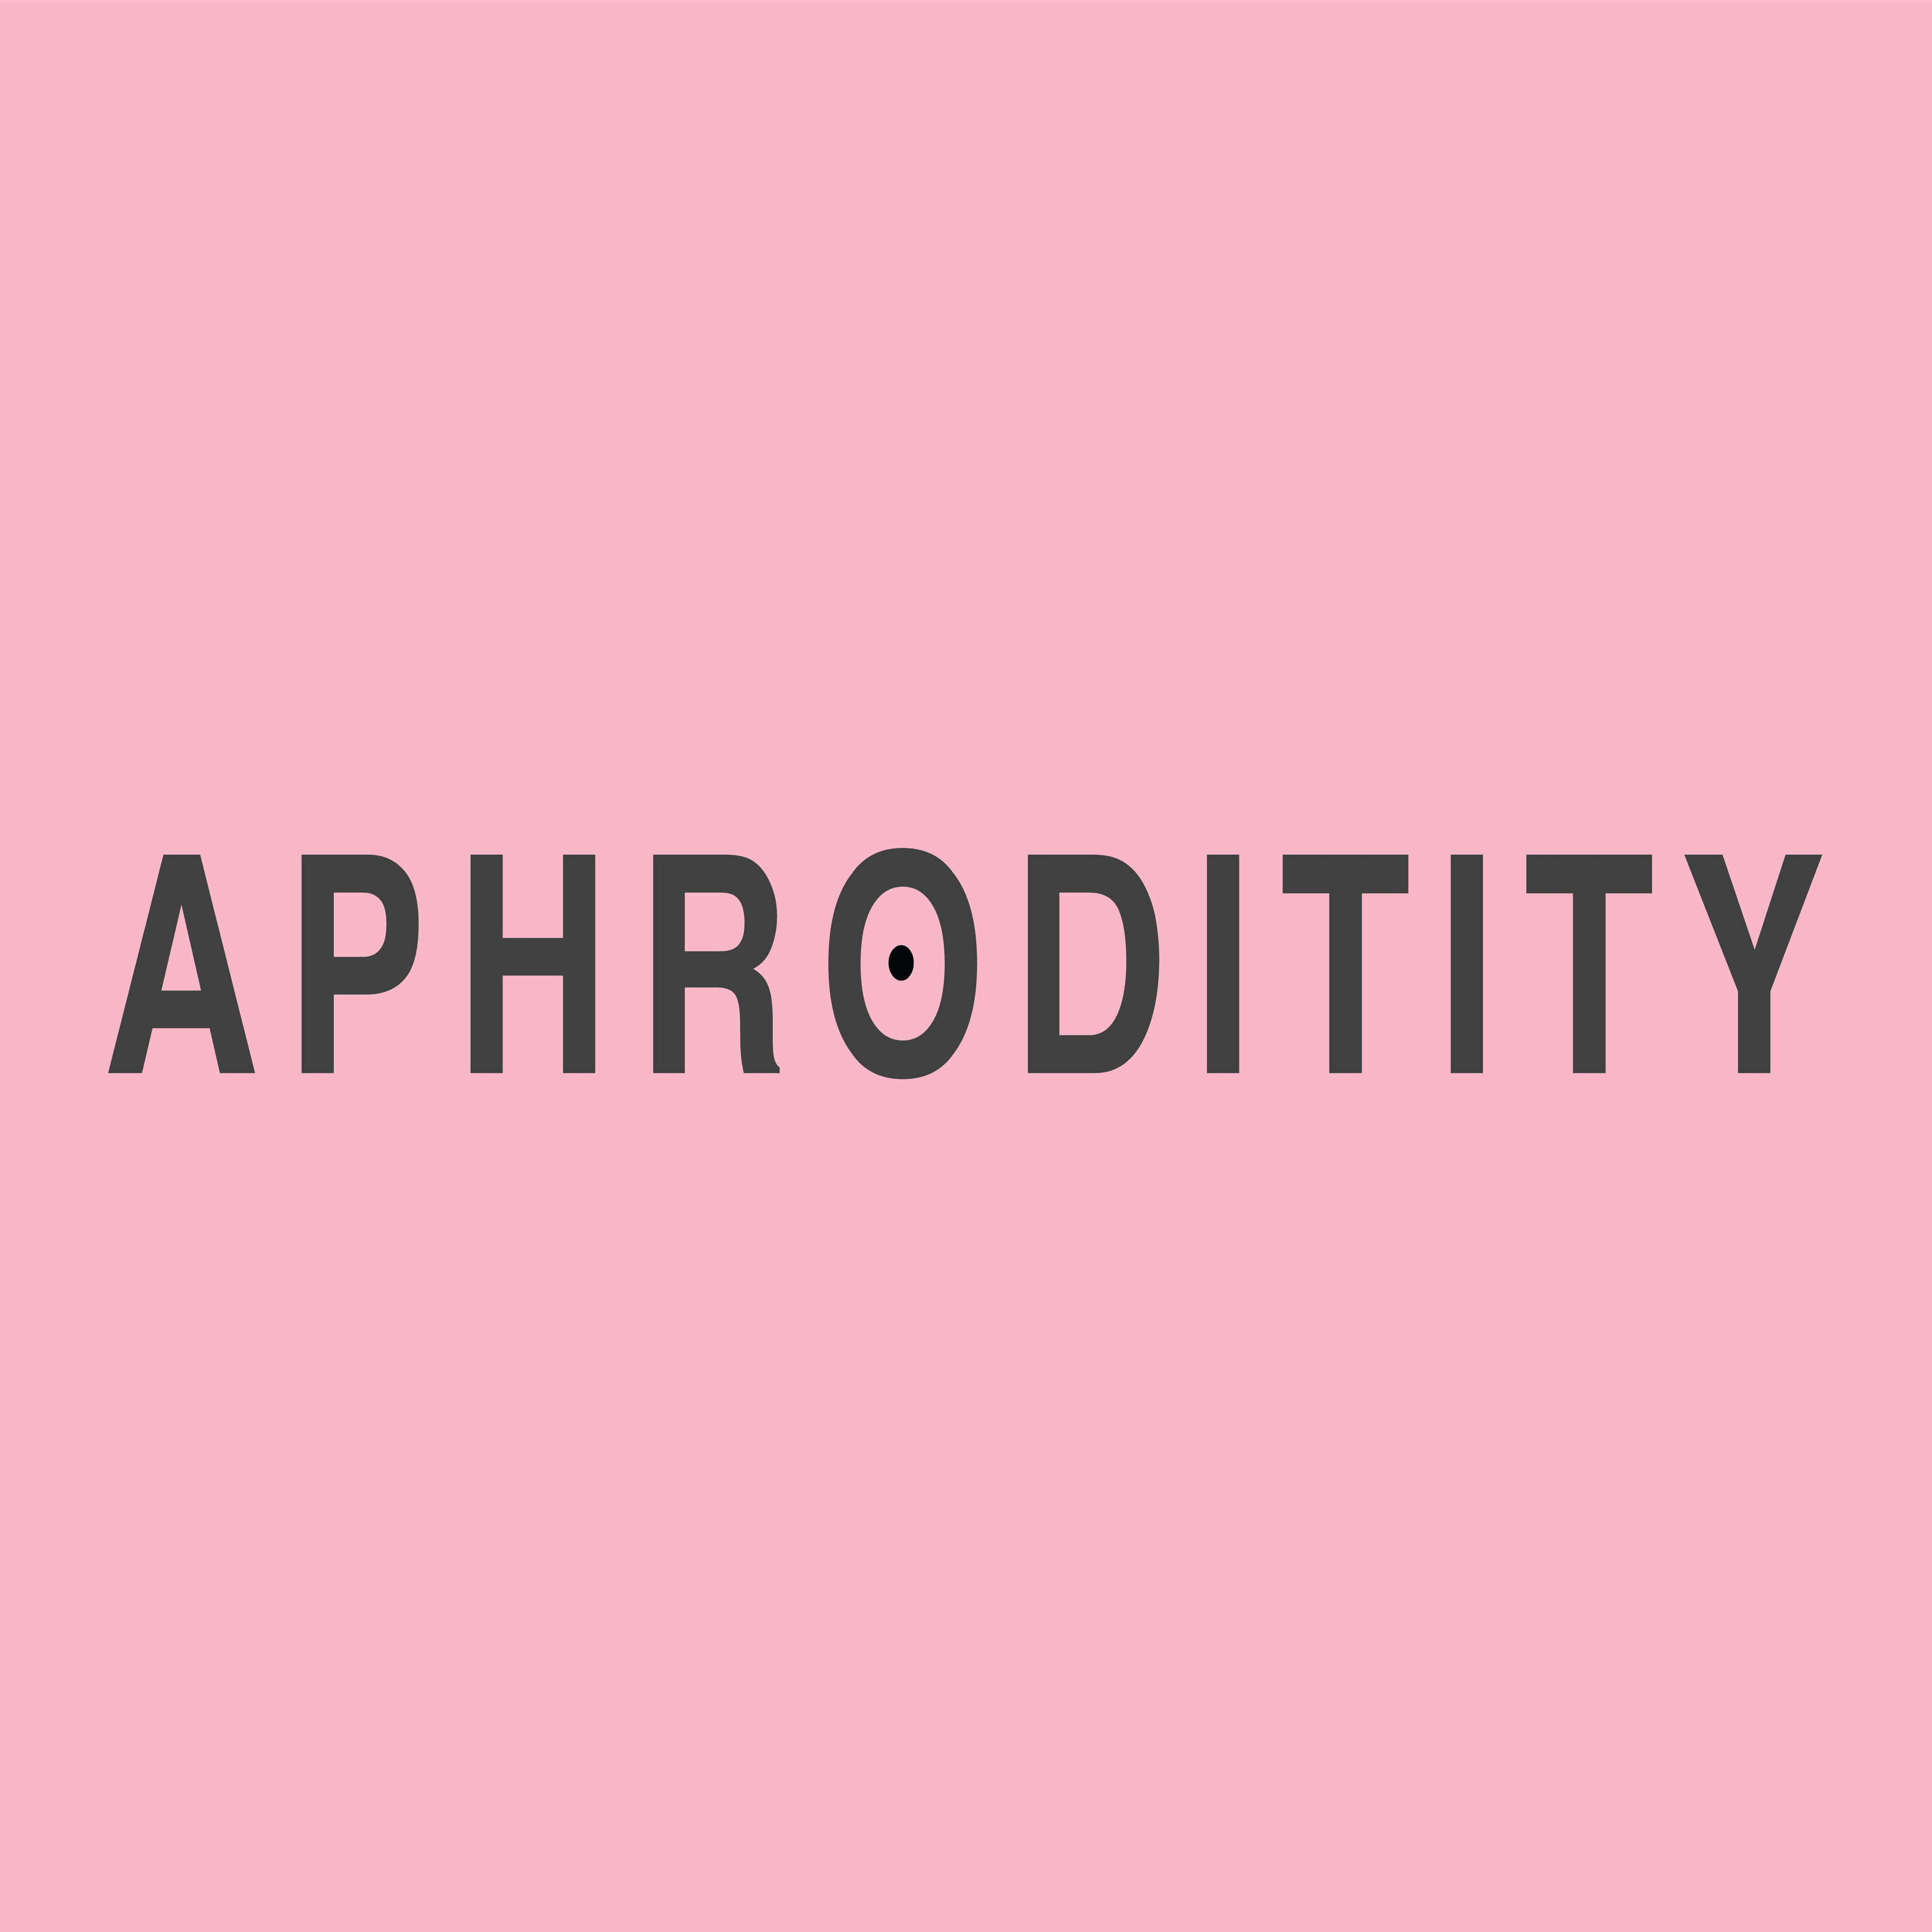 Aphroditity